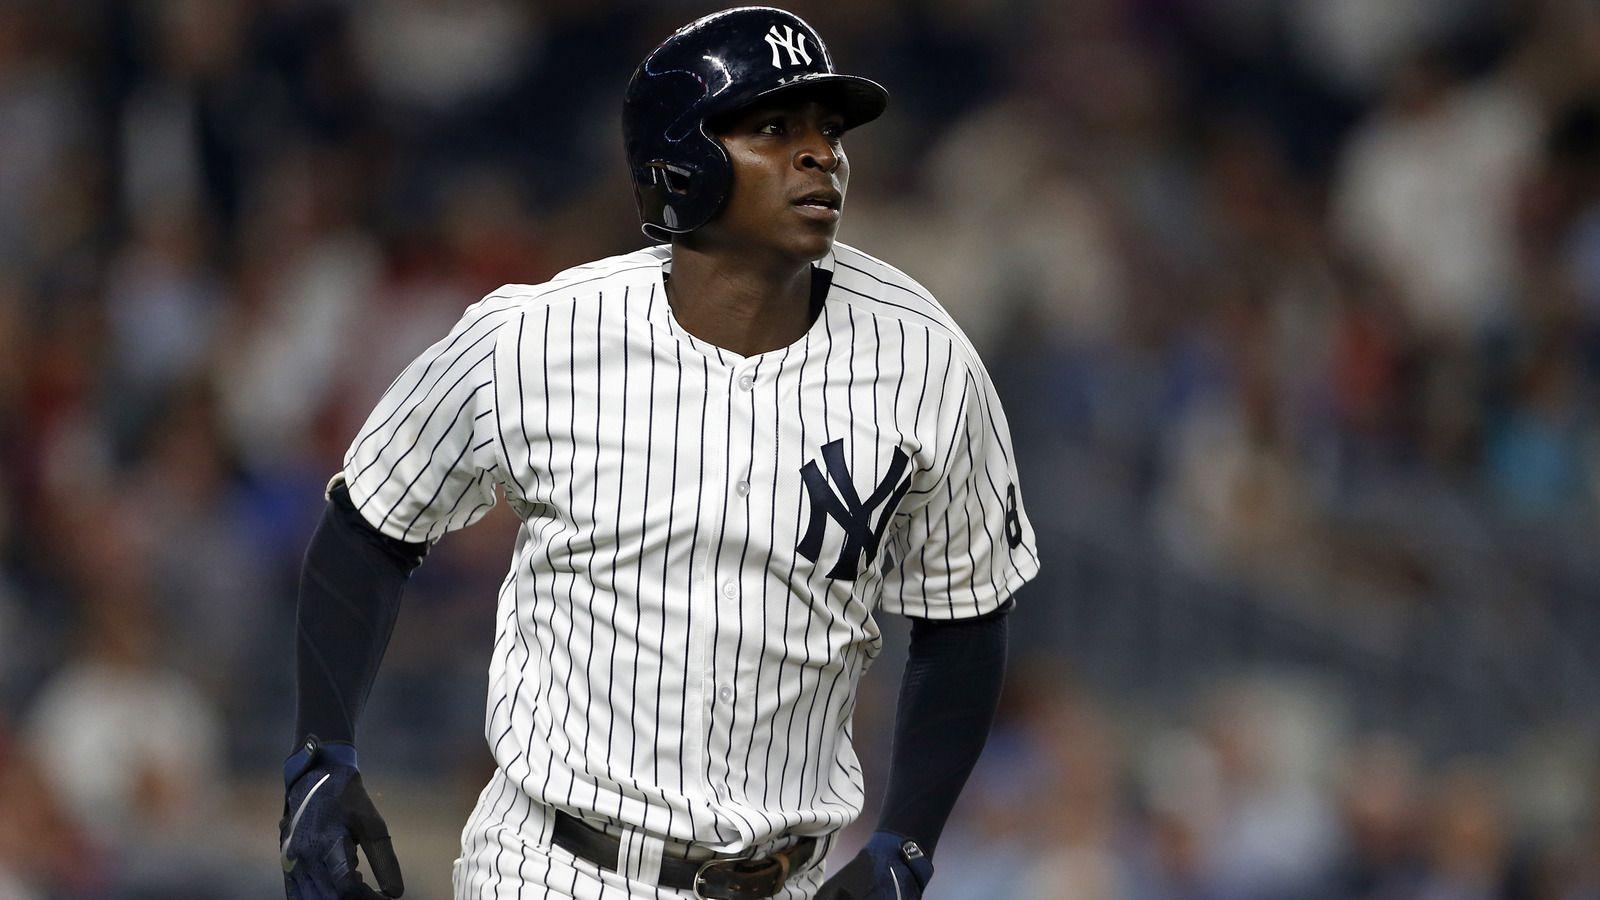 Yankees shortstop Didi Gregorius could miss month of April